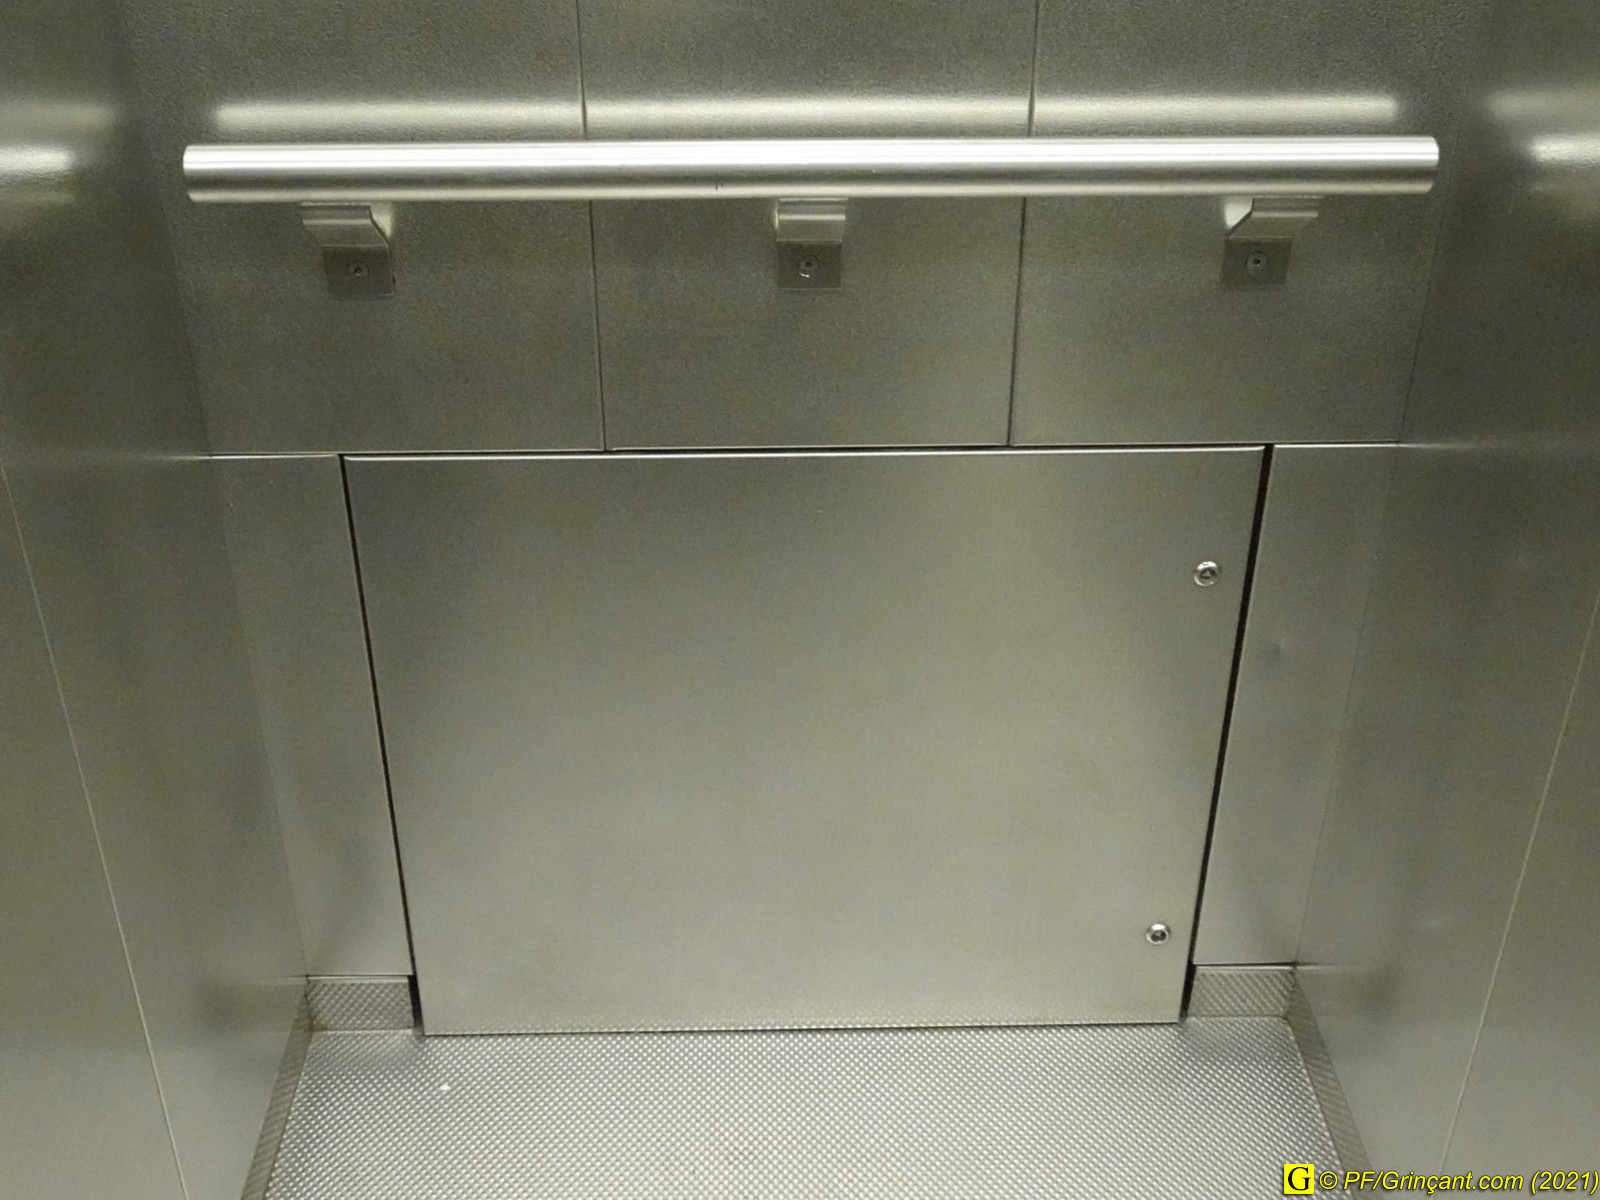 Trappe pour cercueils dans une cabine d'ascenseur